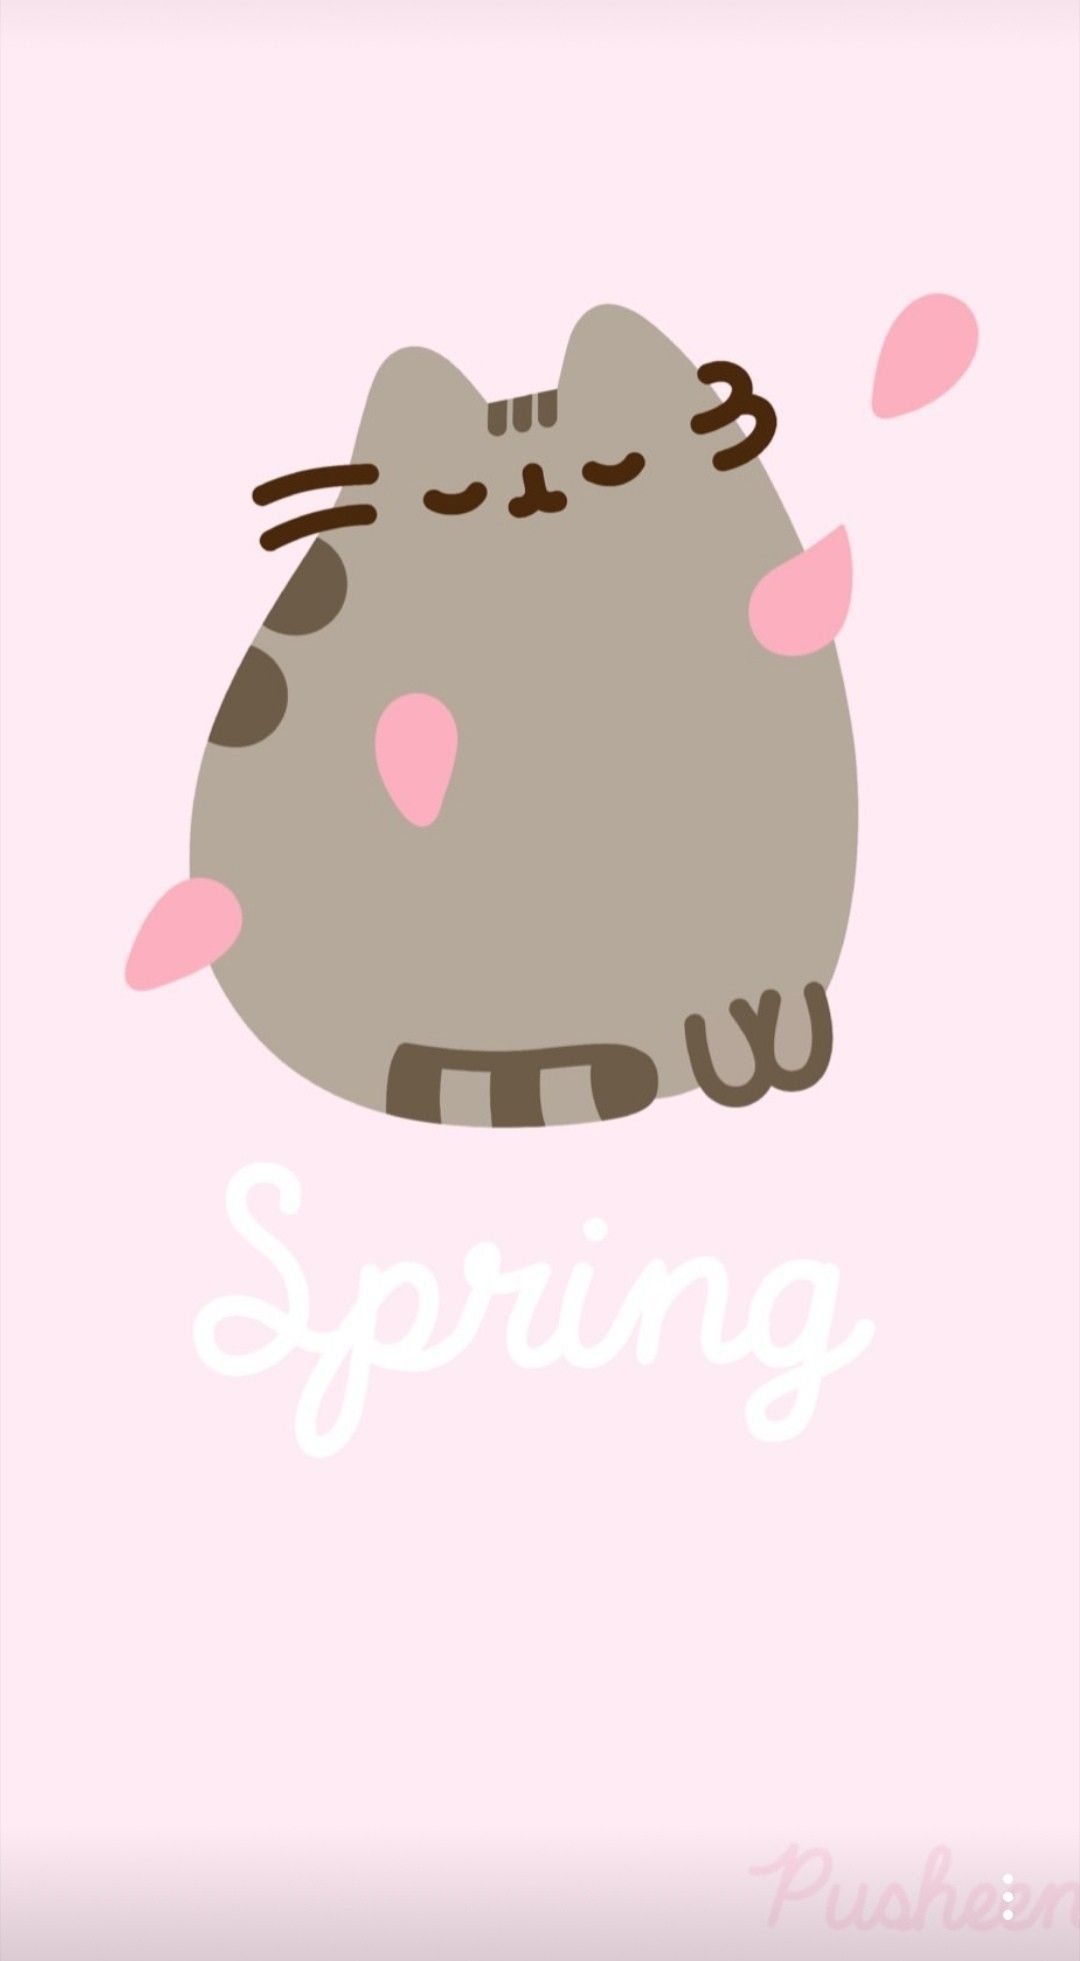 Happy Spring by Pusheen. Pusheen, Pusheen cute, Pusheen cat